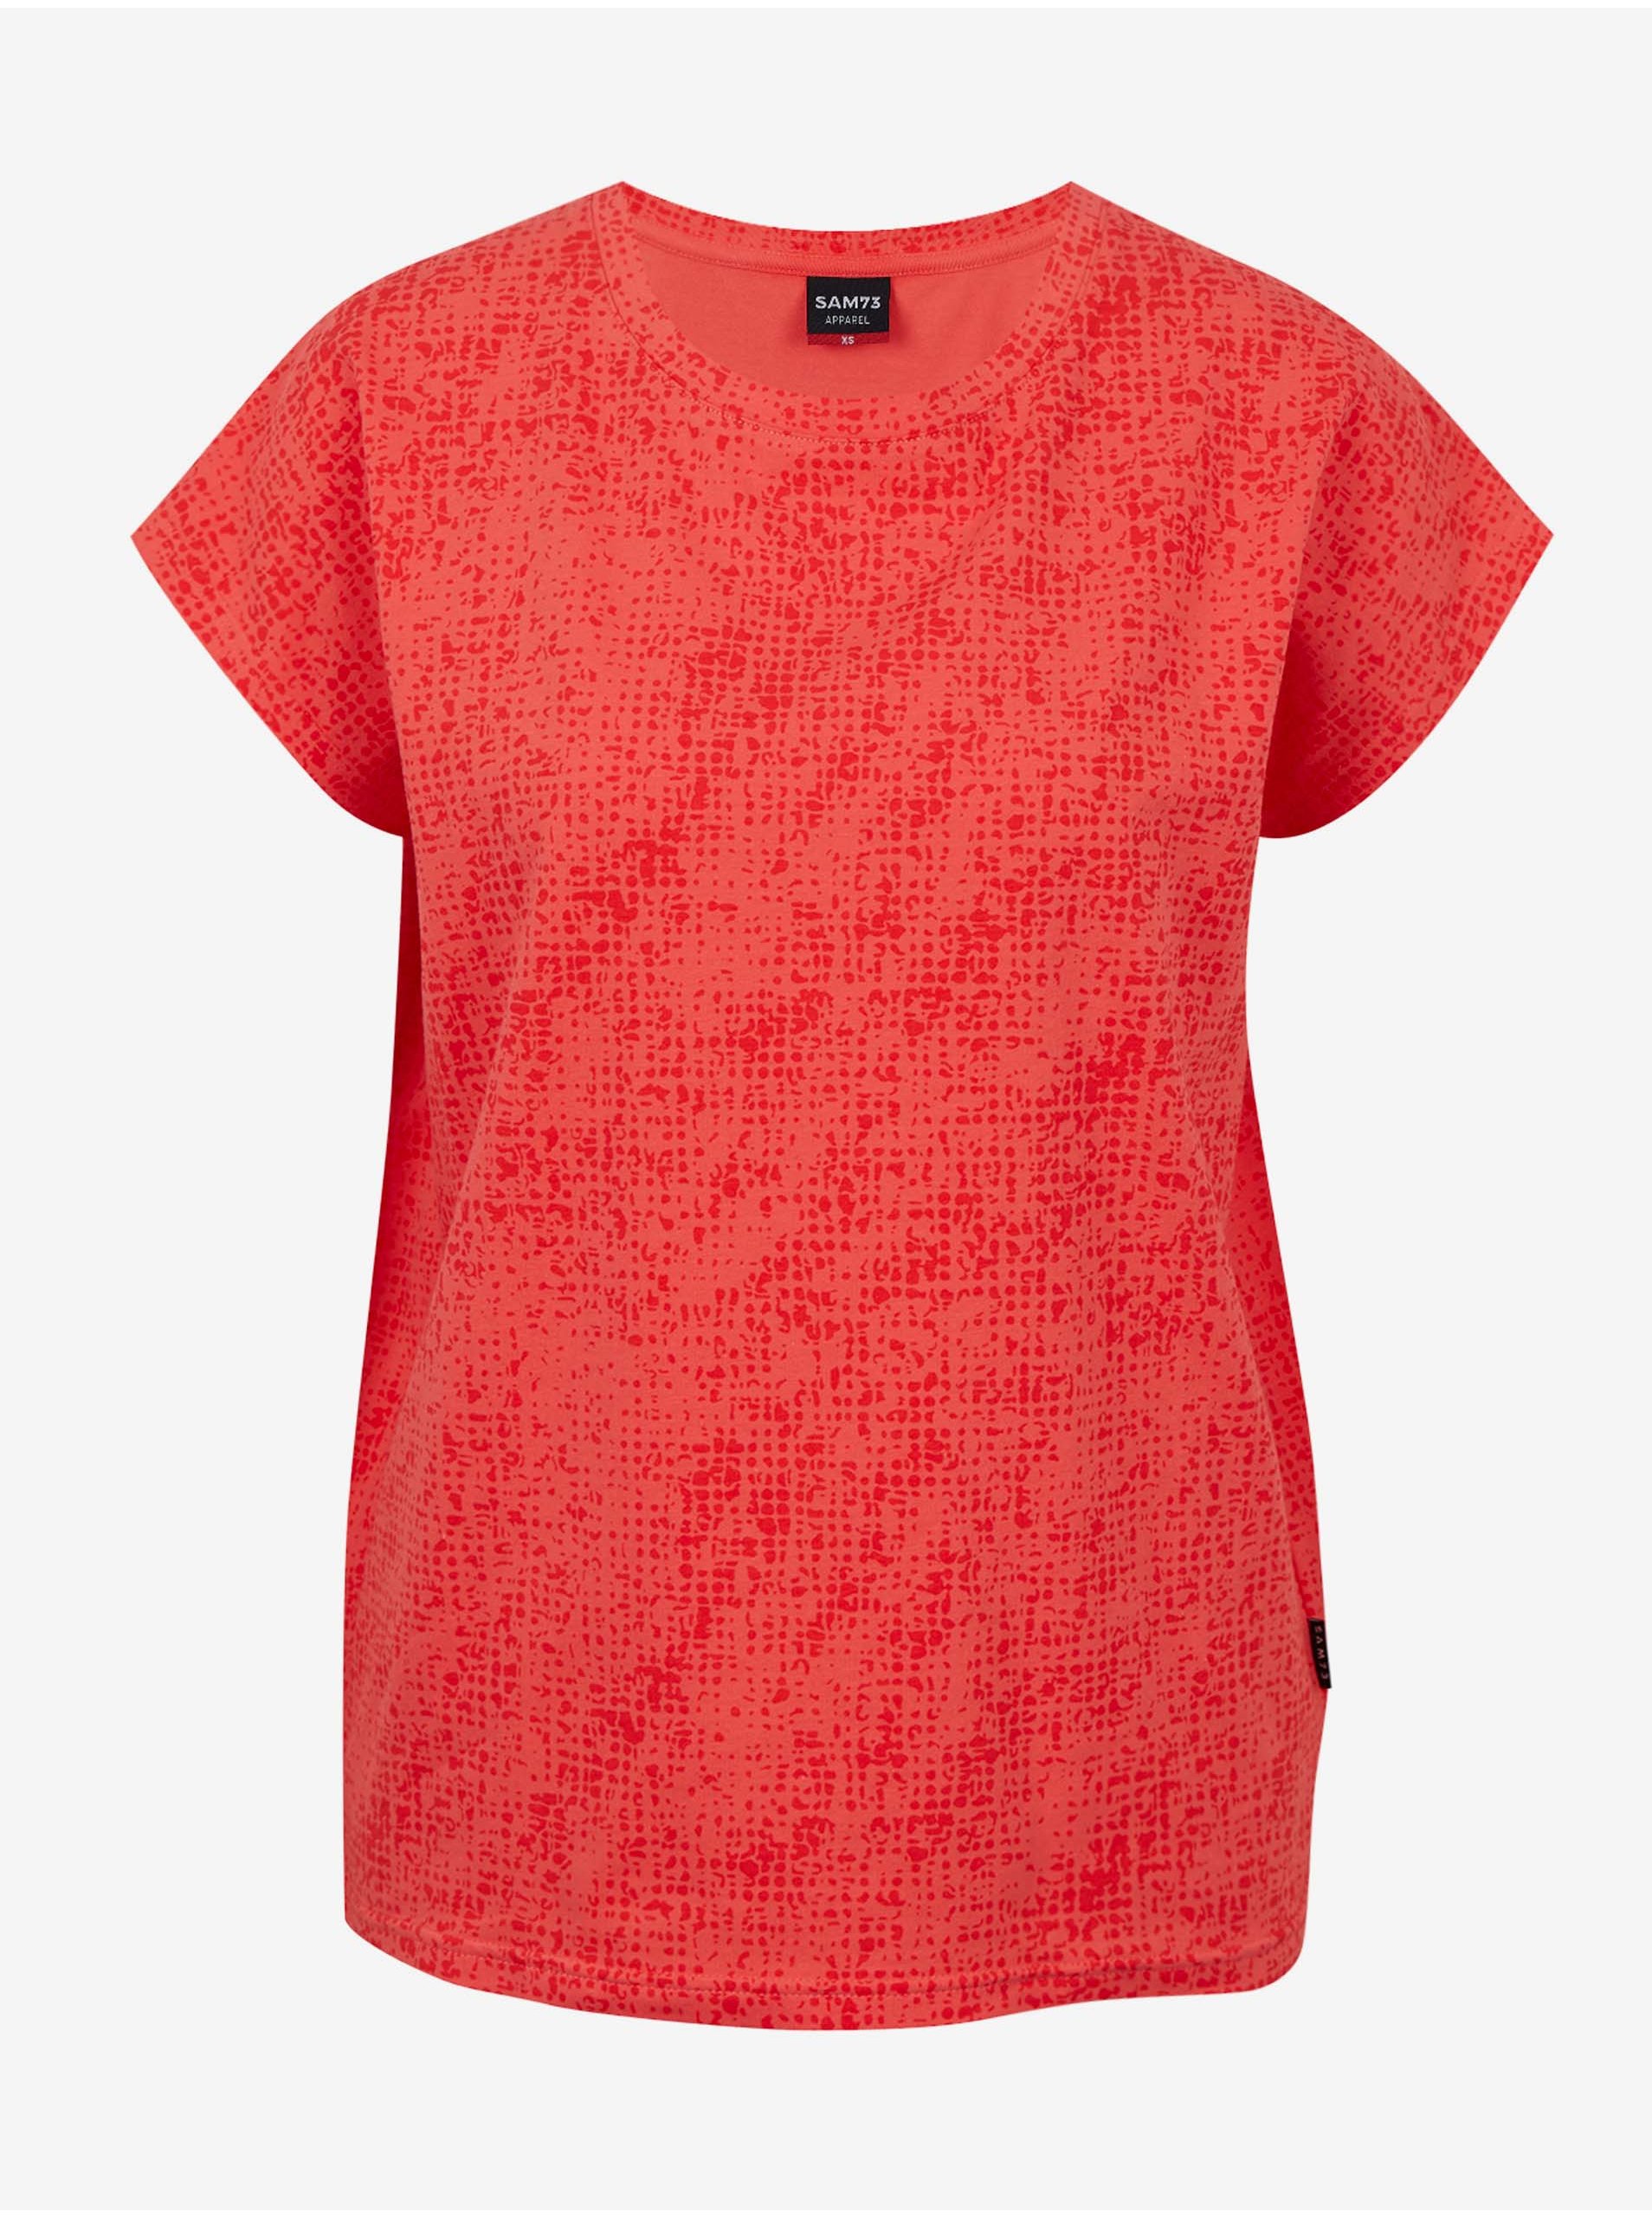 E-shop Korálové dámské vzorované tričko SAM 73 Veronica